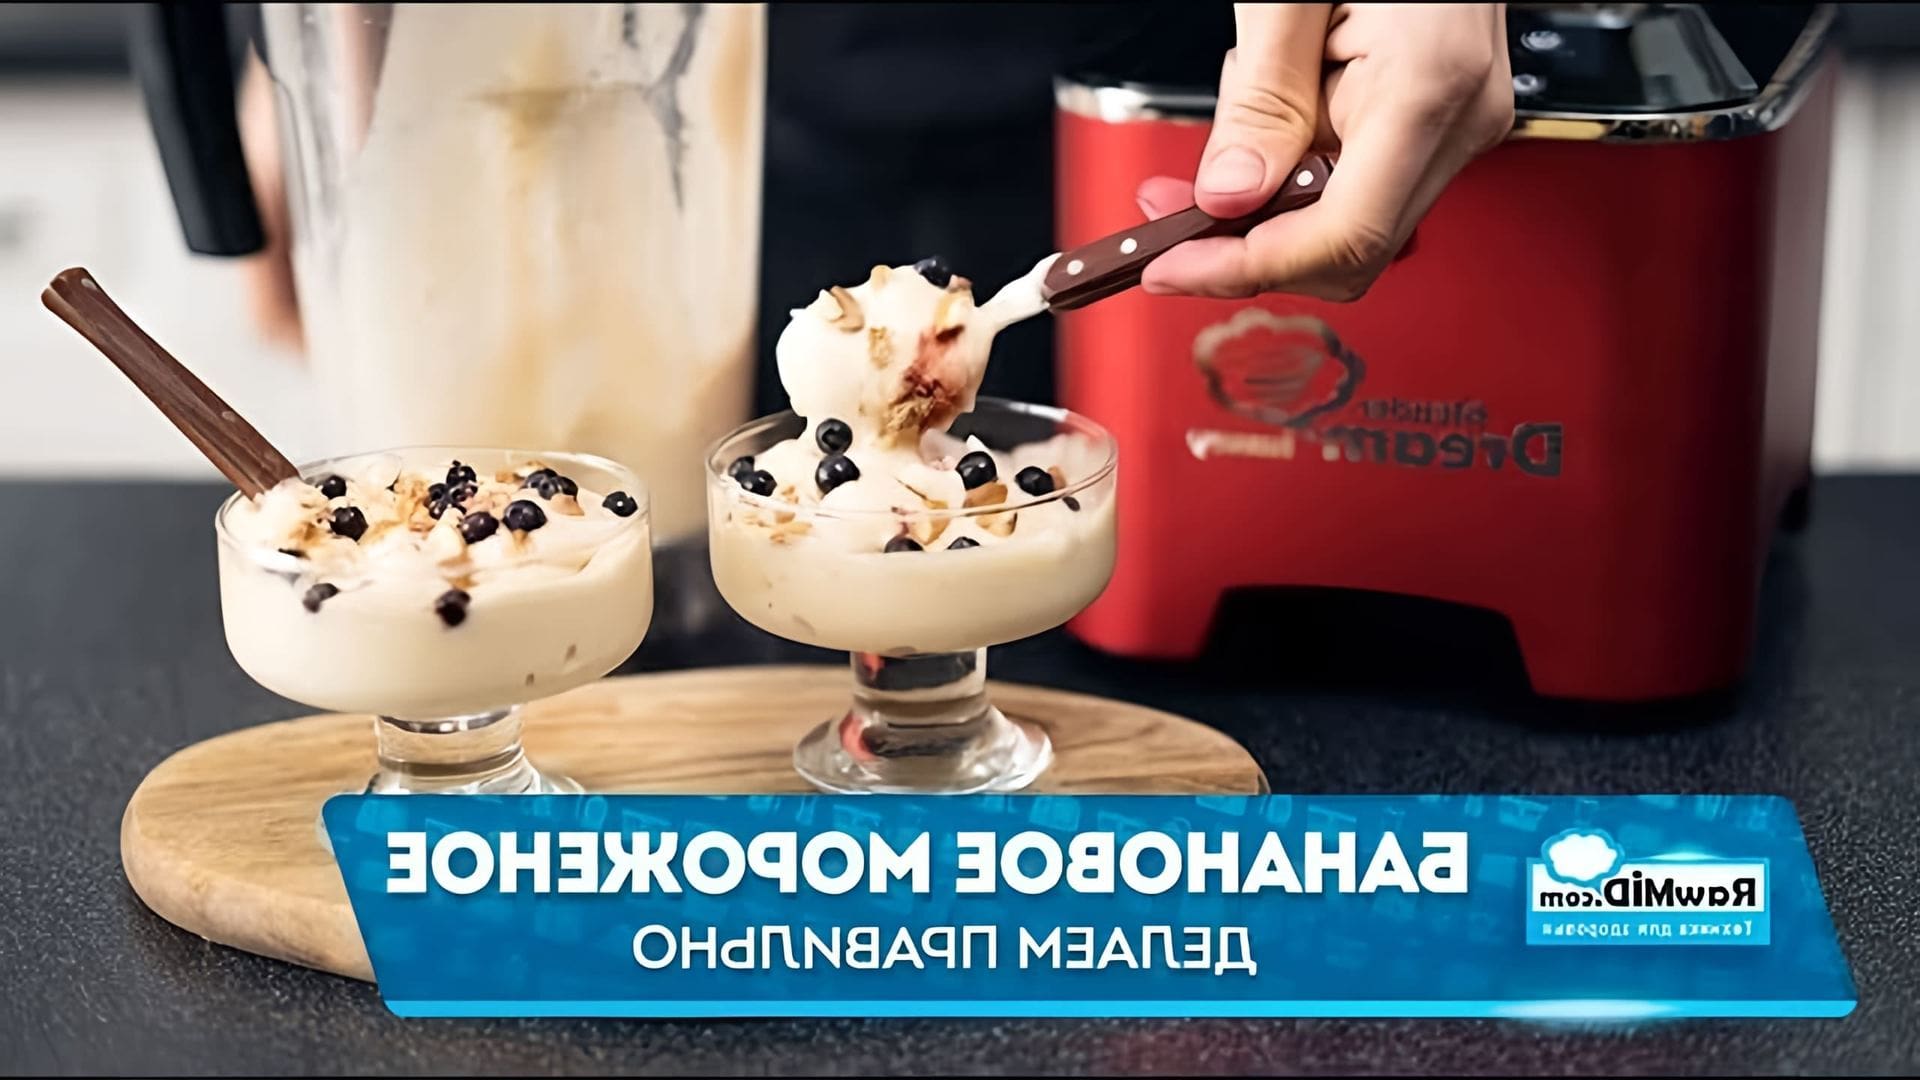 В этом видео демонстрируется рецепт приготовления бананового мороженого